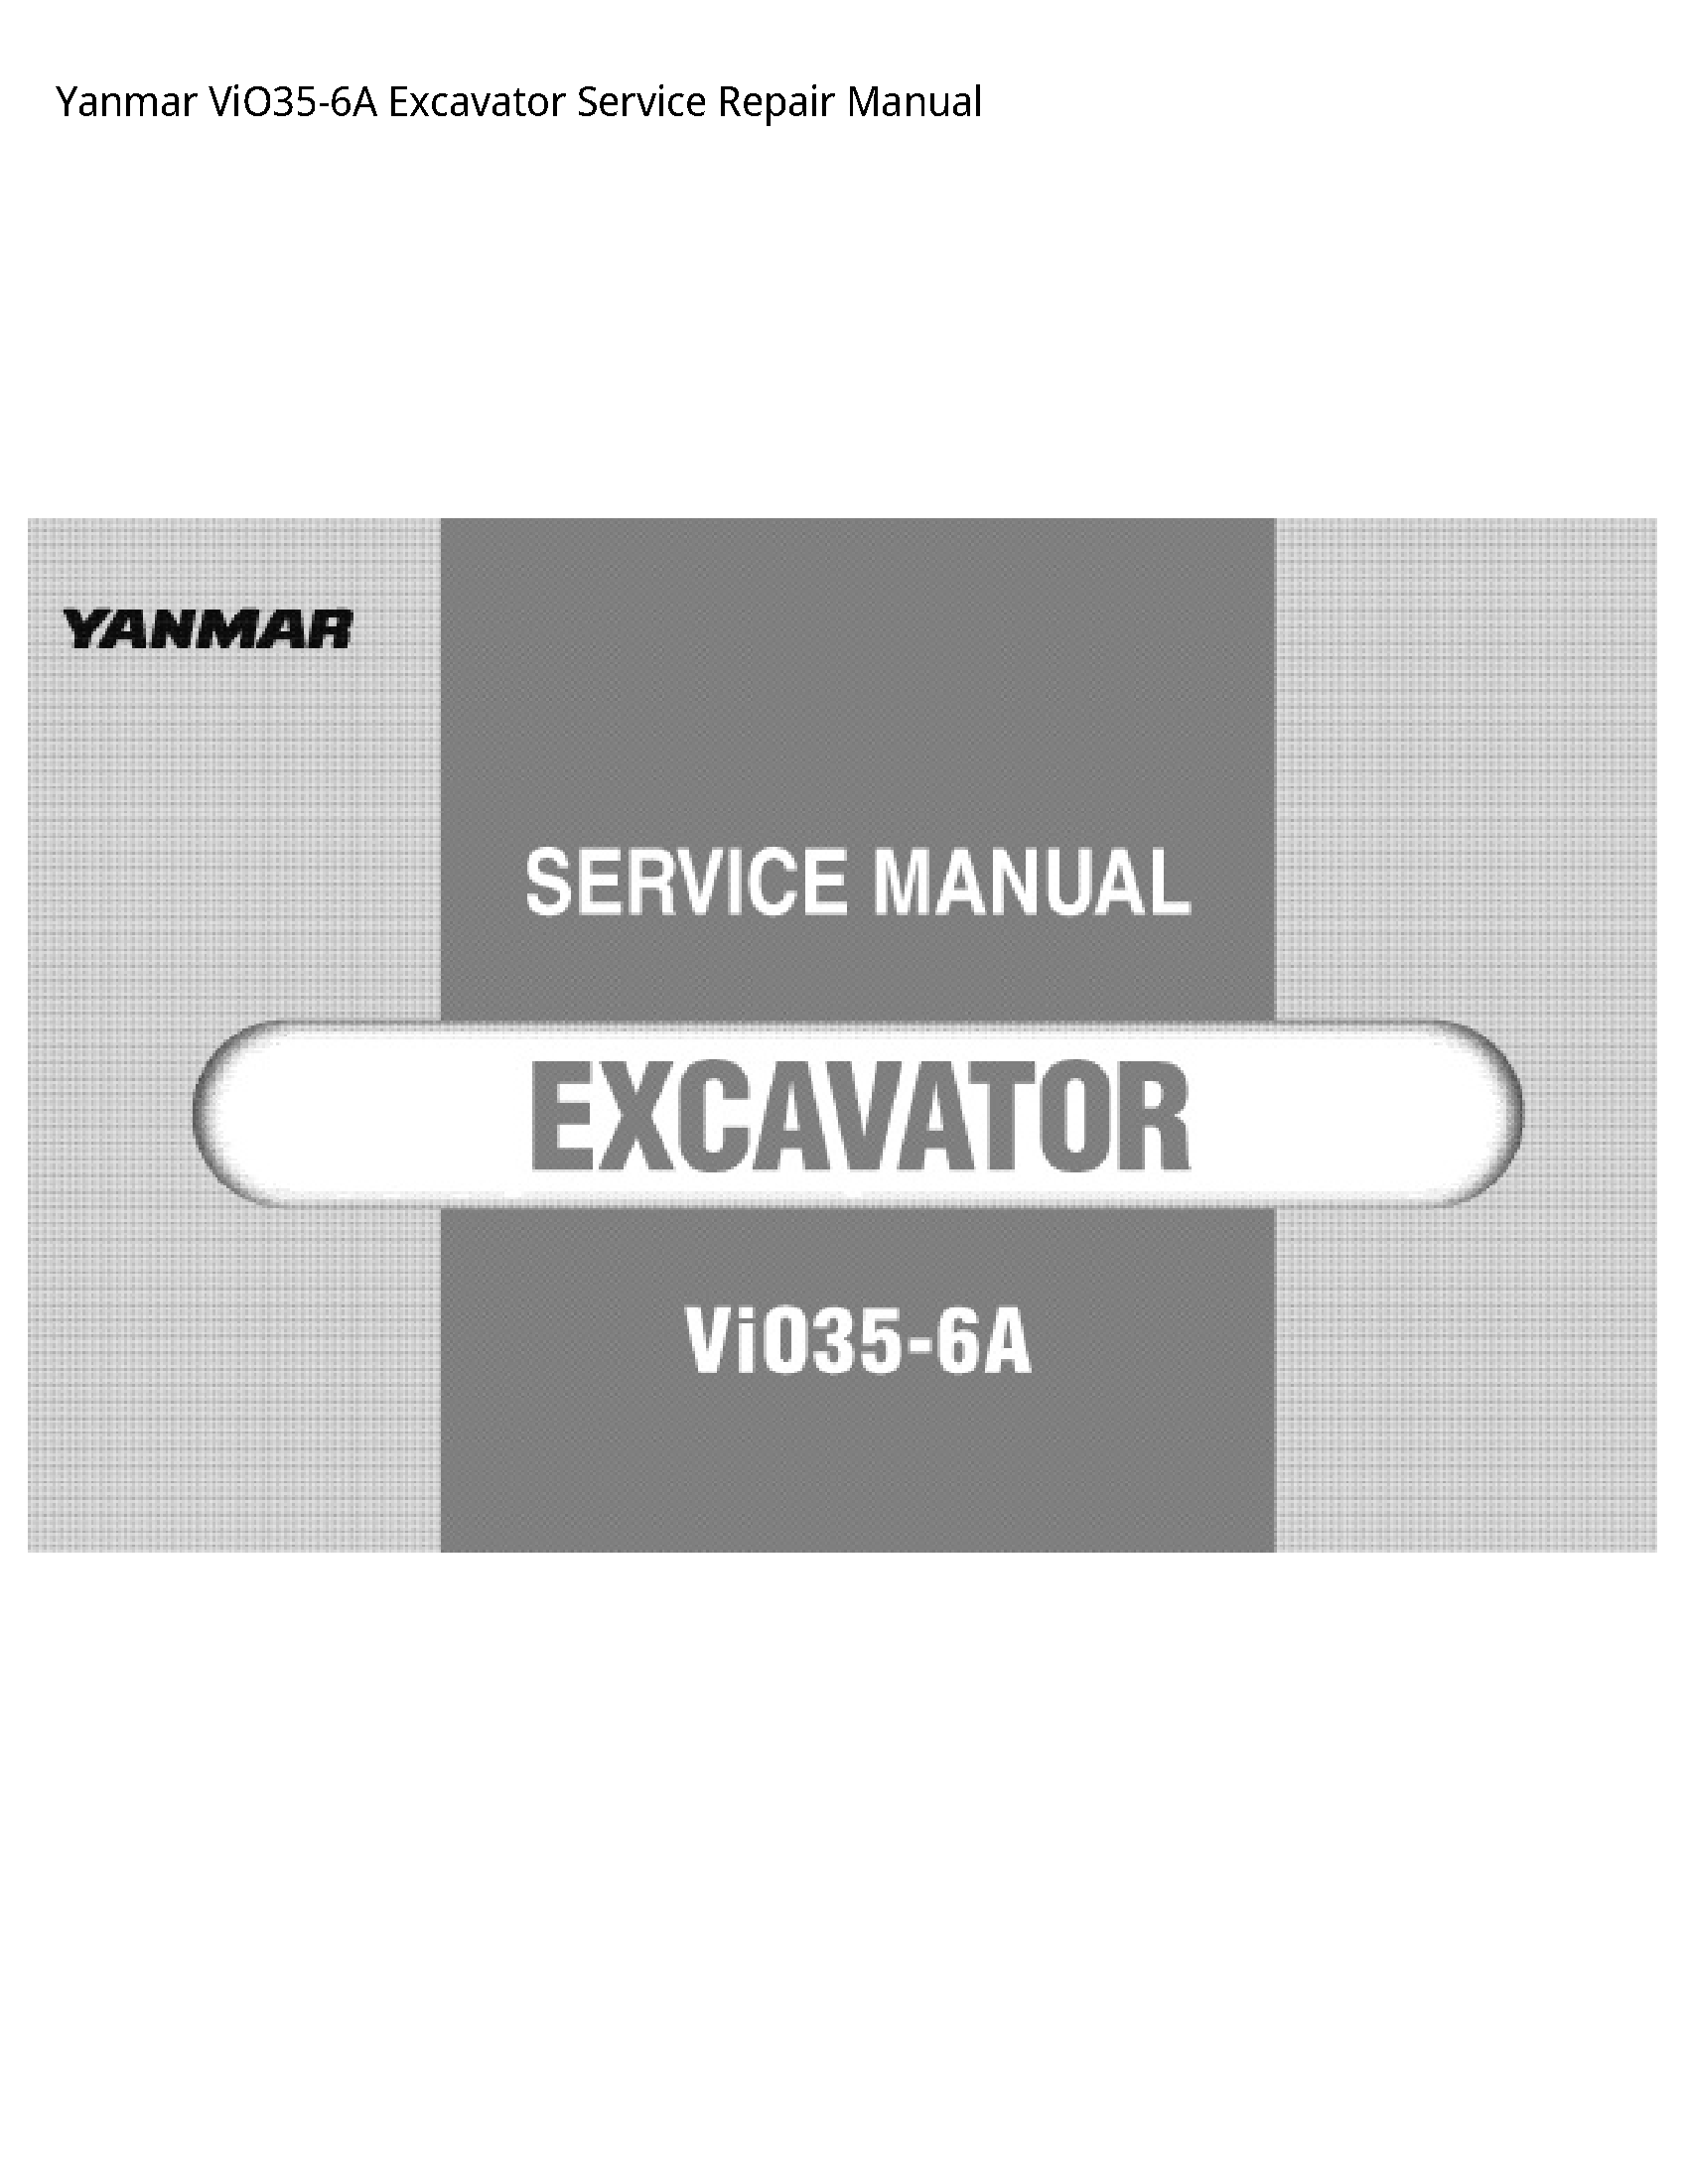 Yanmar ViO35-6A Excavator manual